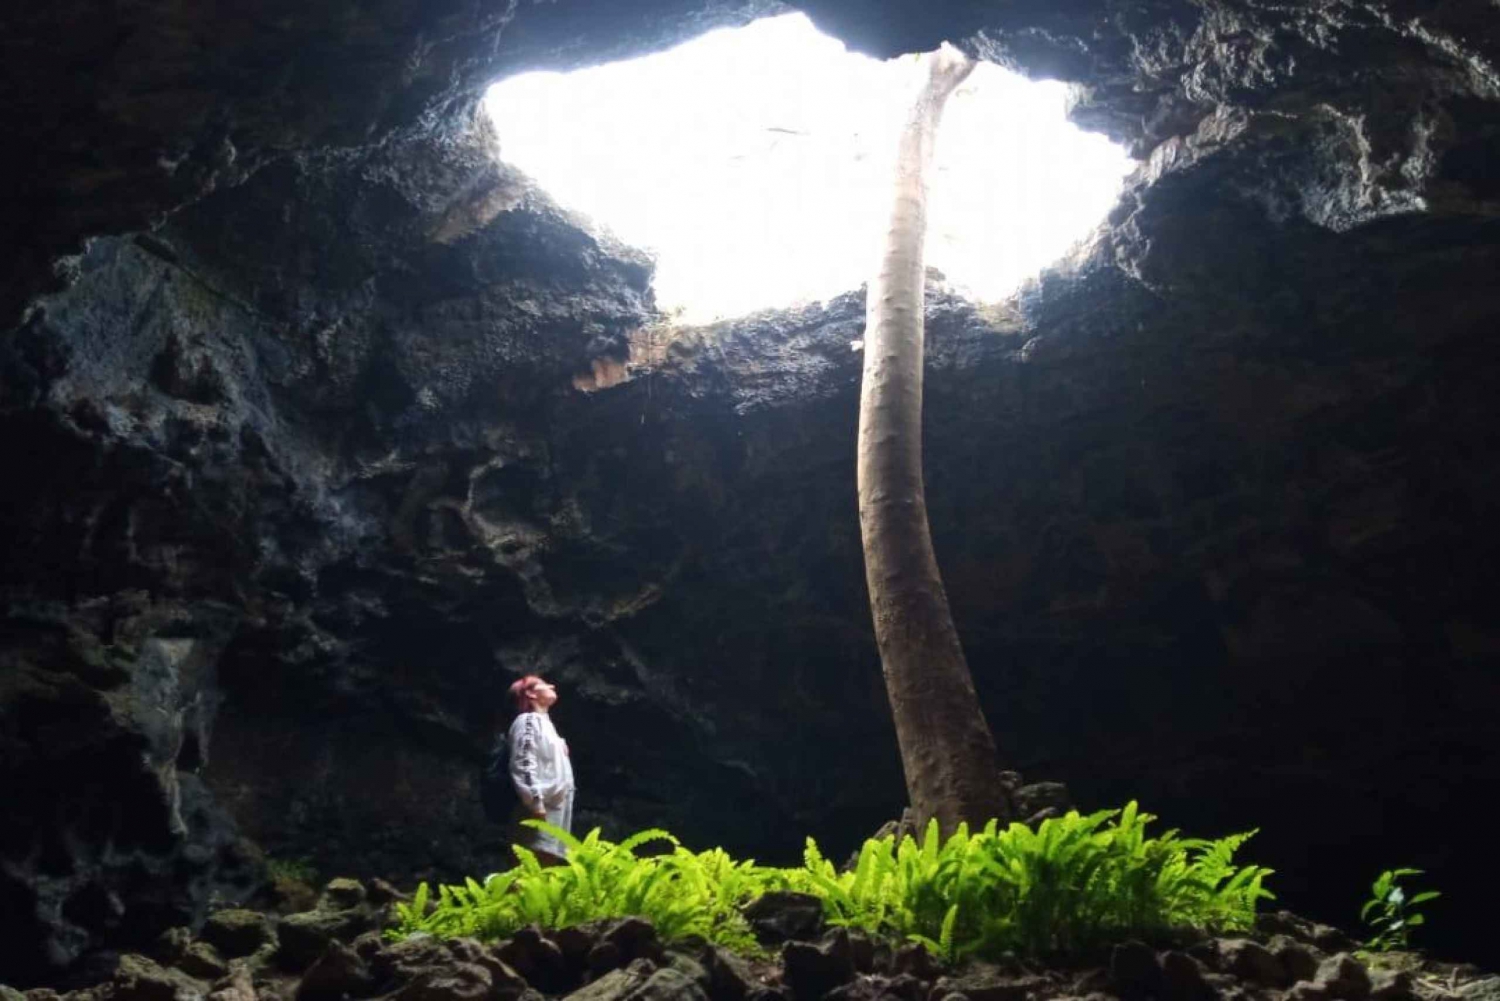 Excursão particular: O mundo subterrâneo das cavernas Rapa Nui